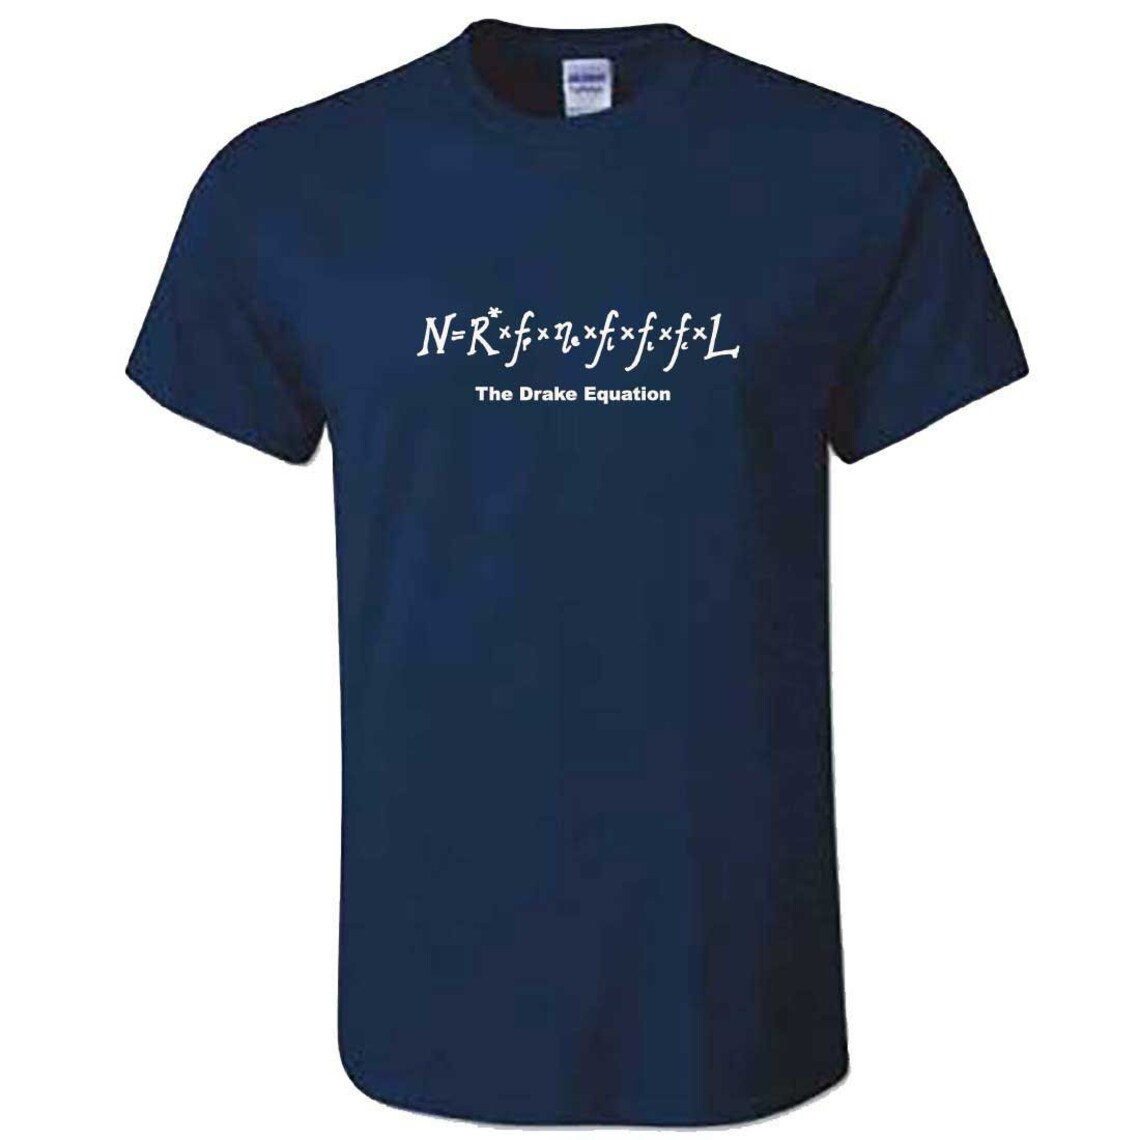 DRAKE EQUATION T-shirt Mens Maths Science T-shirt | Etsy